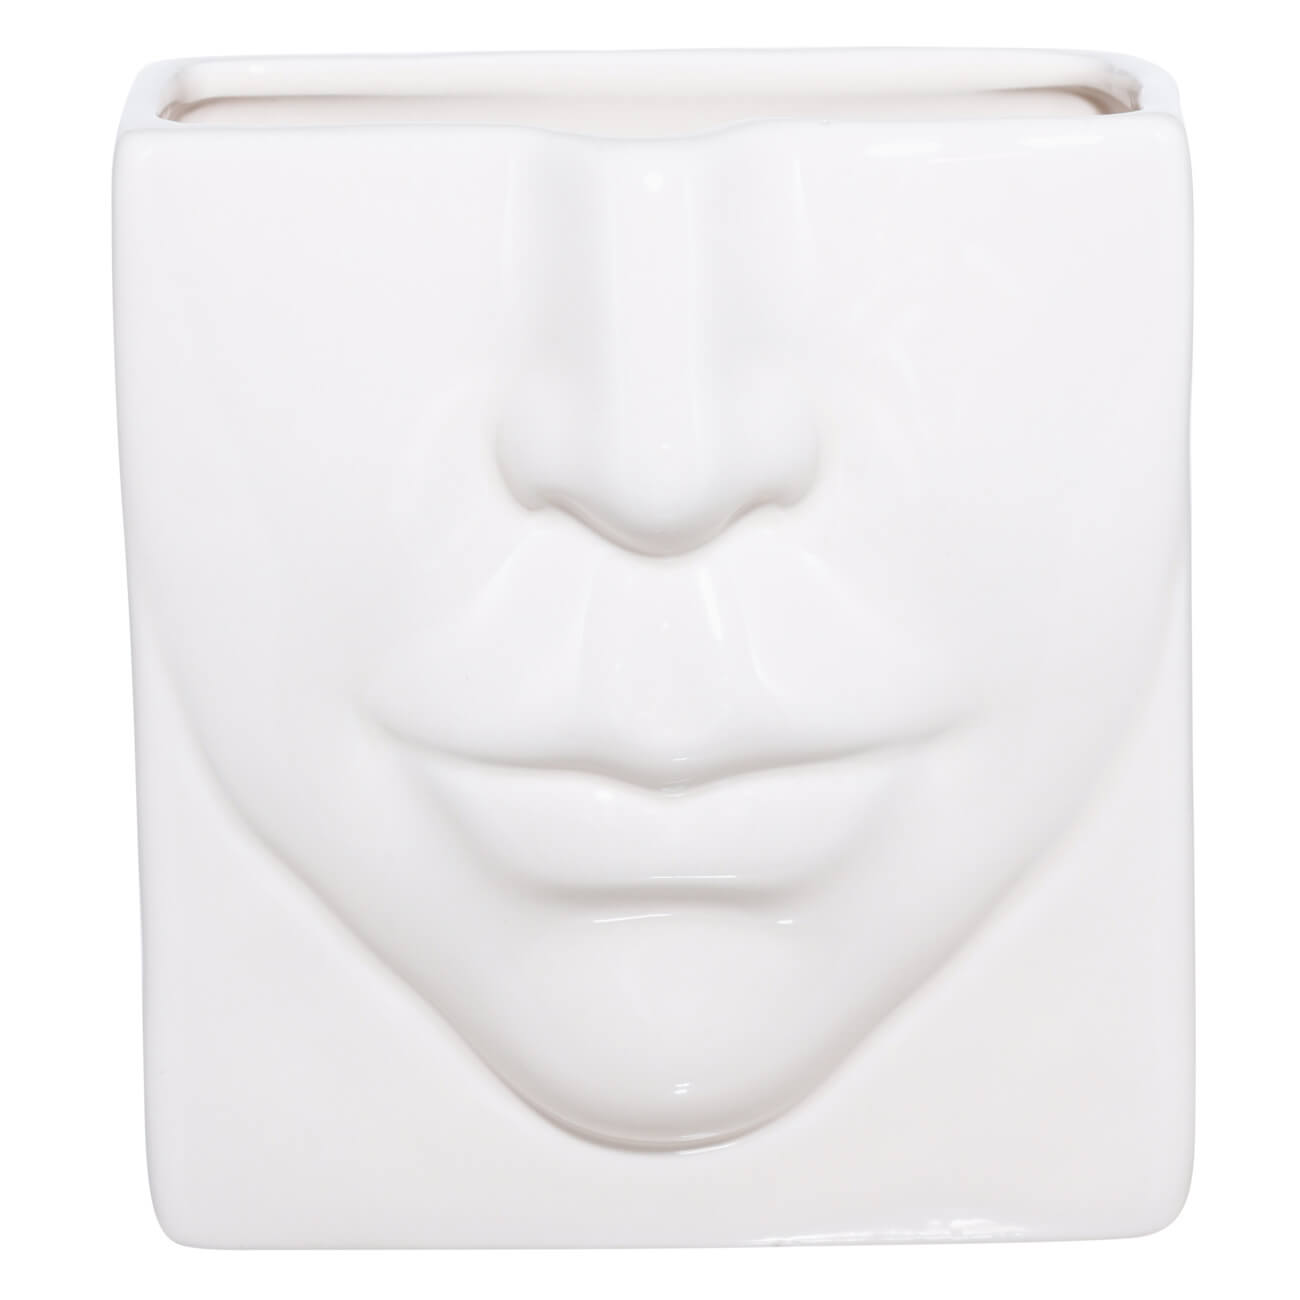 Подставка для косметических кистей, 13х11 см, керамика, молочная, Часть лица, Face подставка под зубочистки